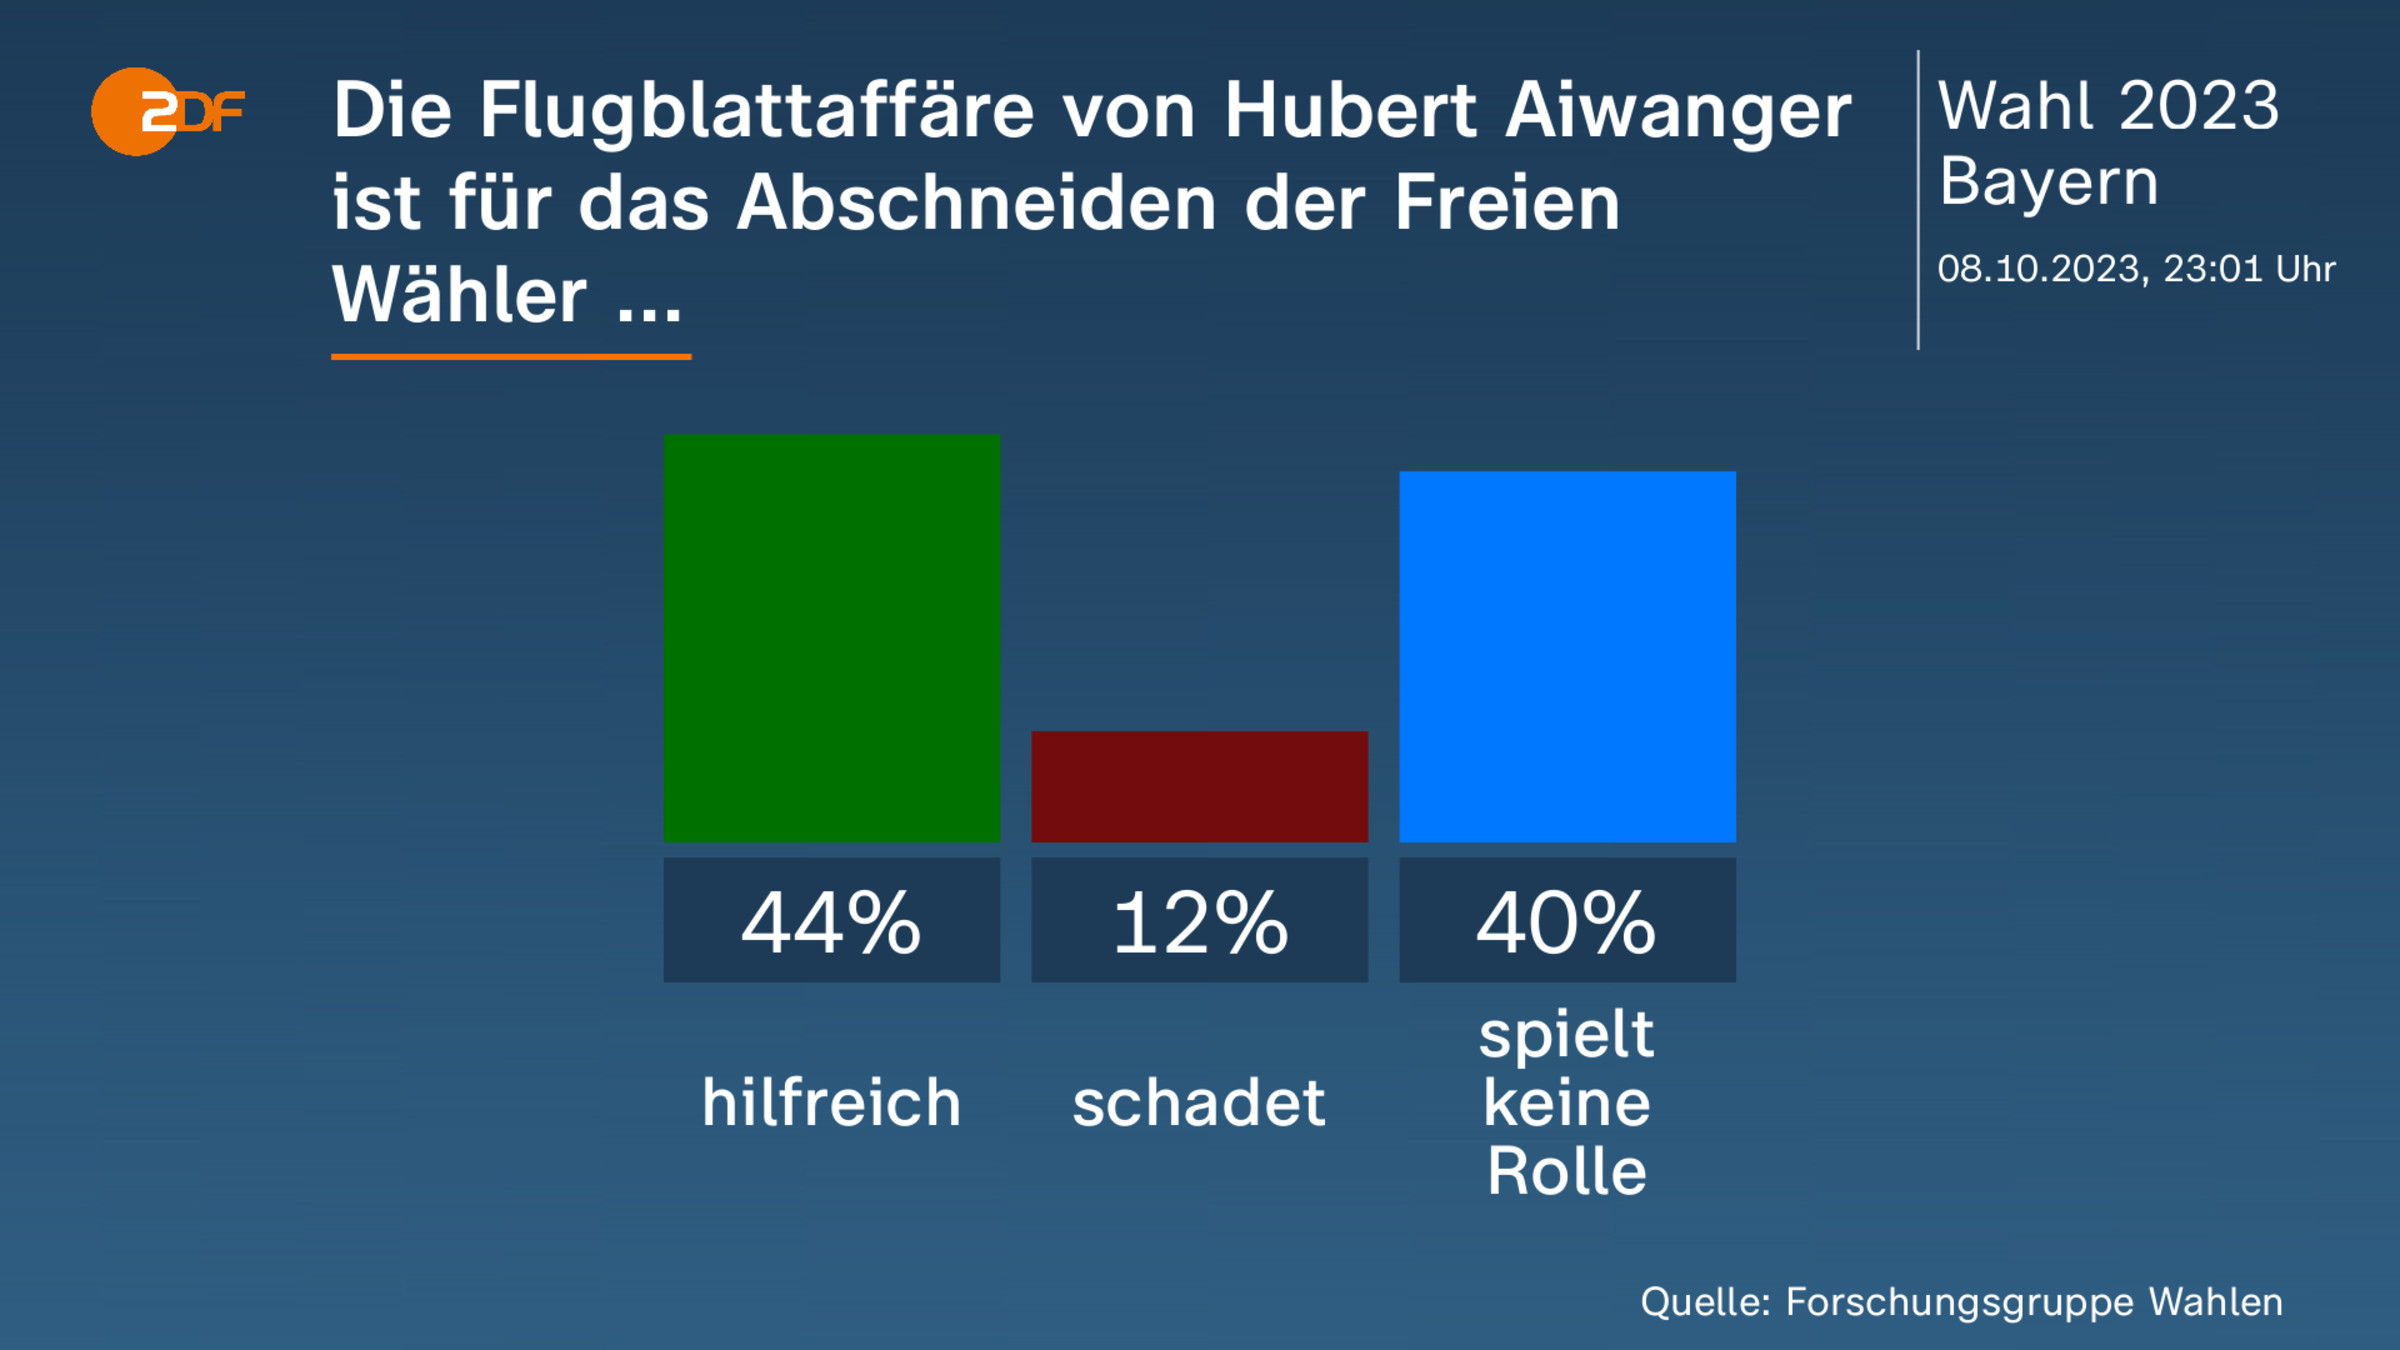 Die Flugblattaffäre von Hubert Aiwanger ist für das Abschneiden der Freien Wähler ...